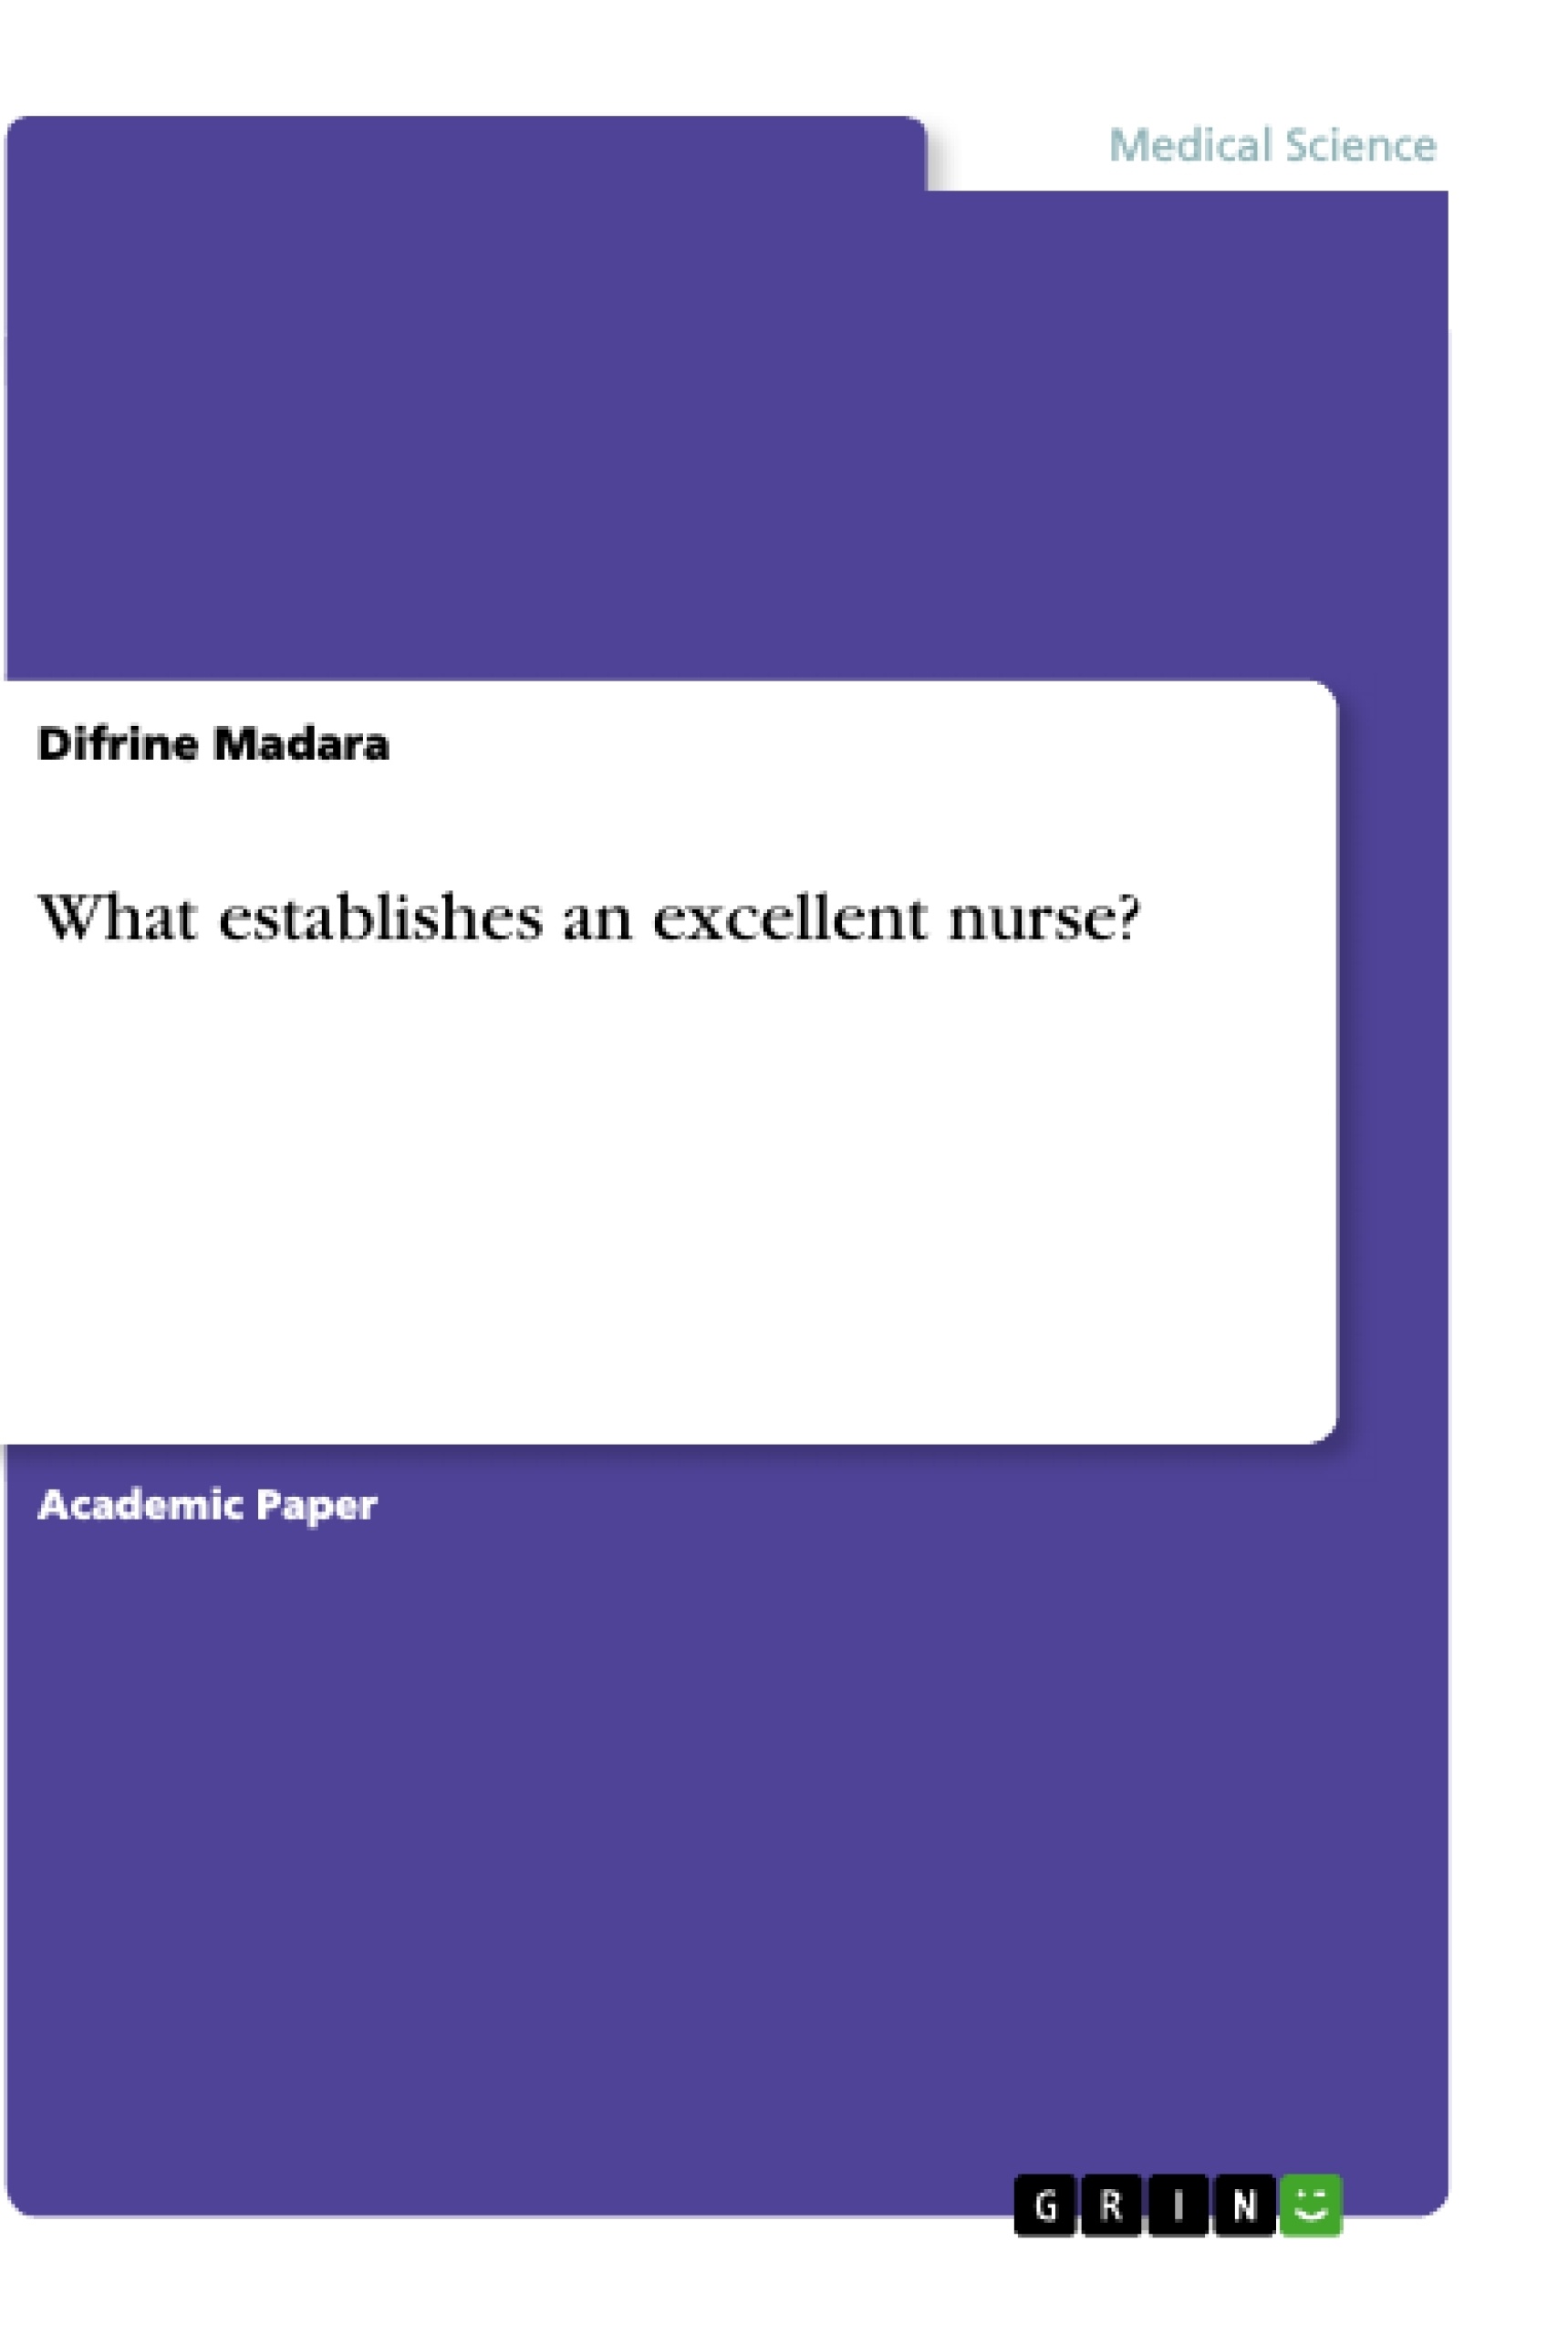 Title: What establishes an excellent nurse?